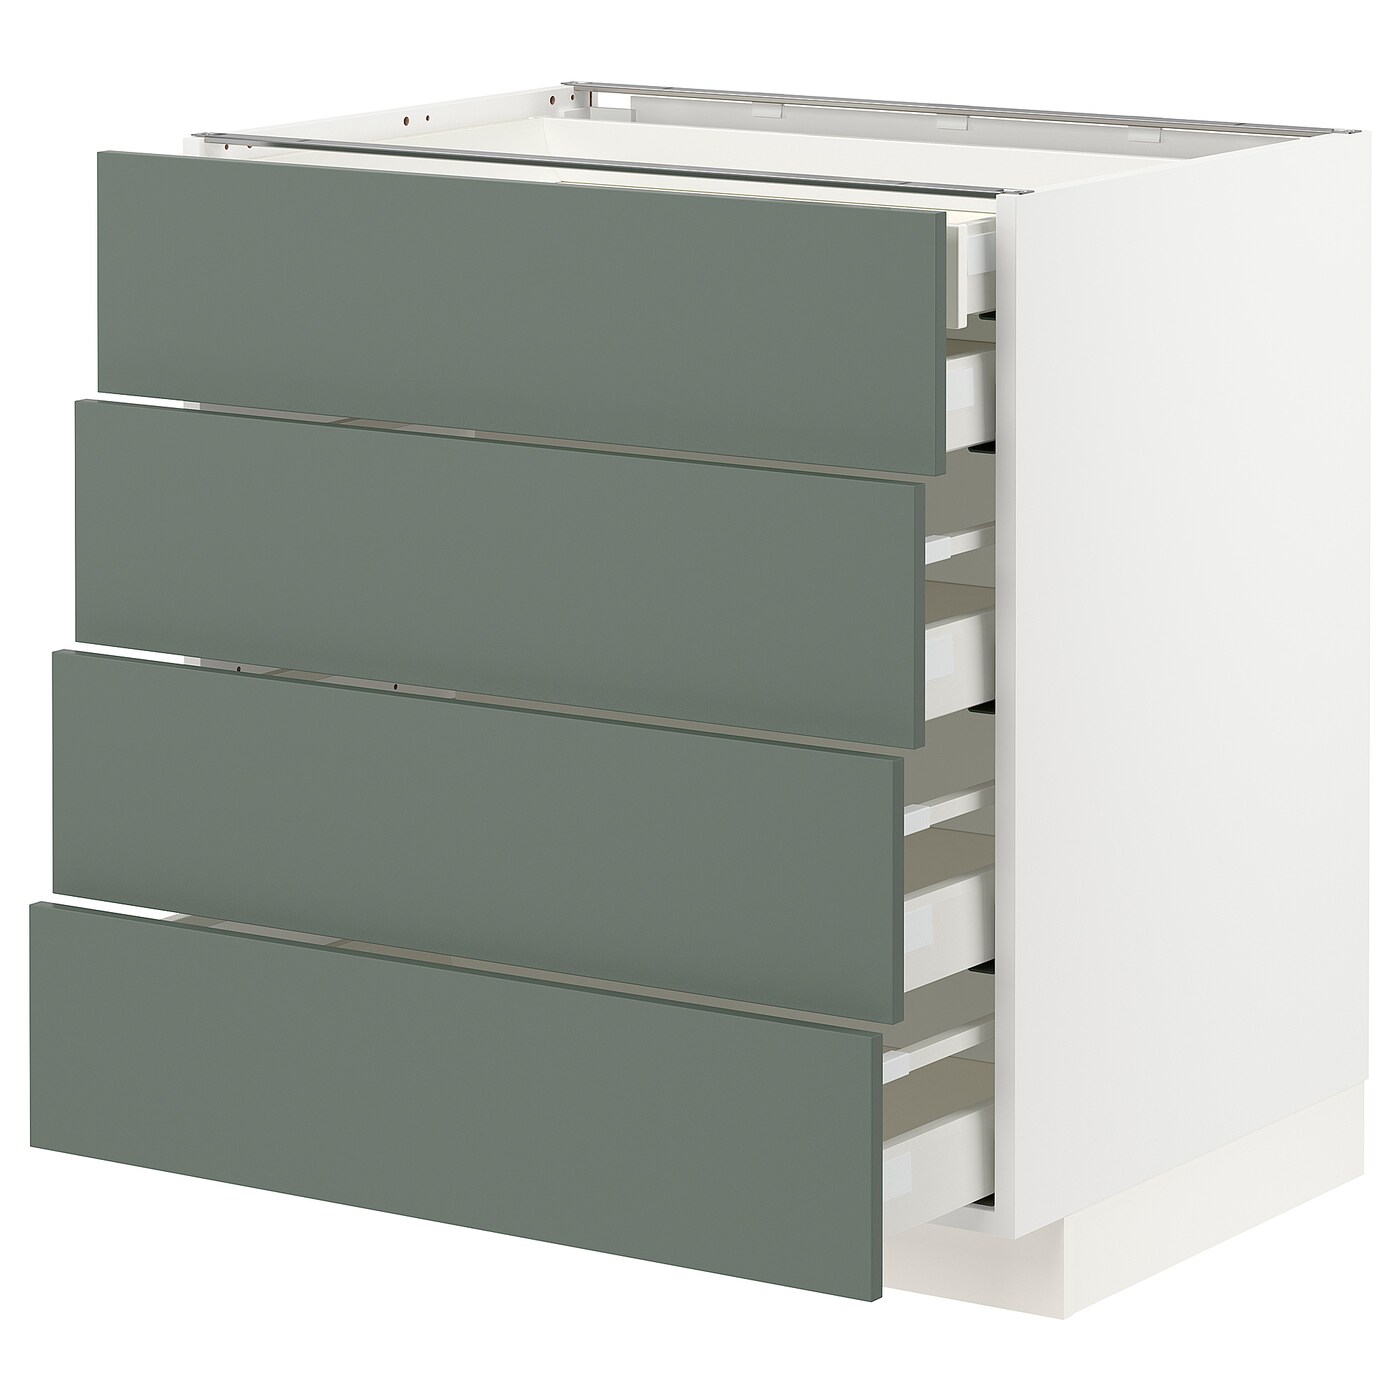 Напольный кухонный шкаф  - IKEA METOD MAXIMERA, 88x61,6x80см, белый/светло-серый, МЕТОД МАКСИМЕРА ИКЕА